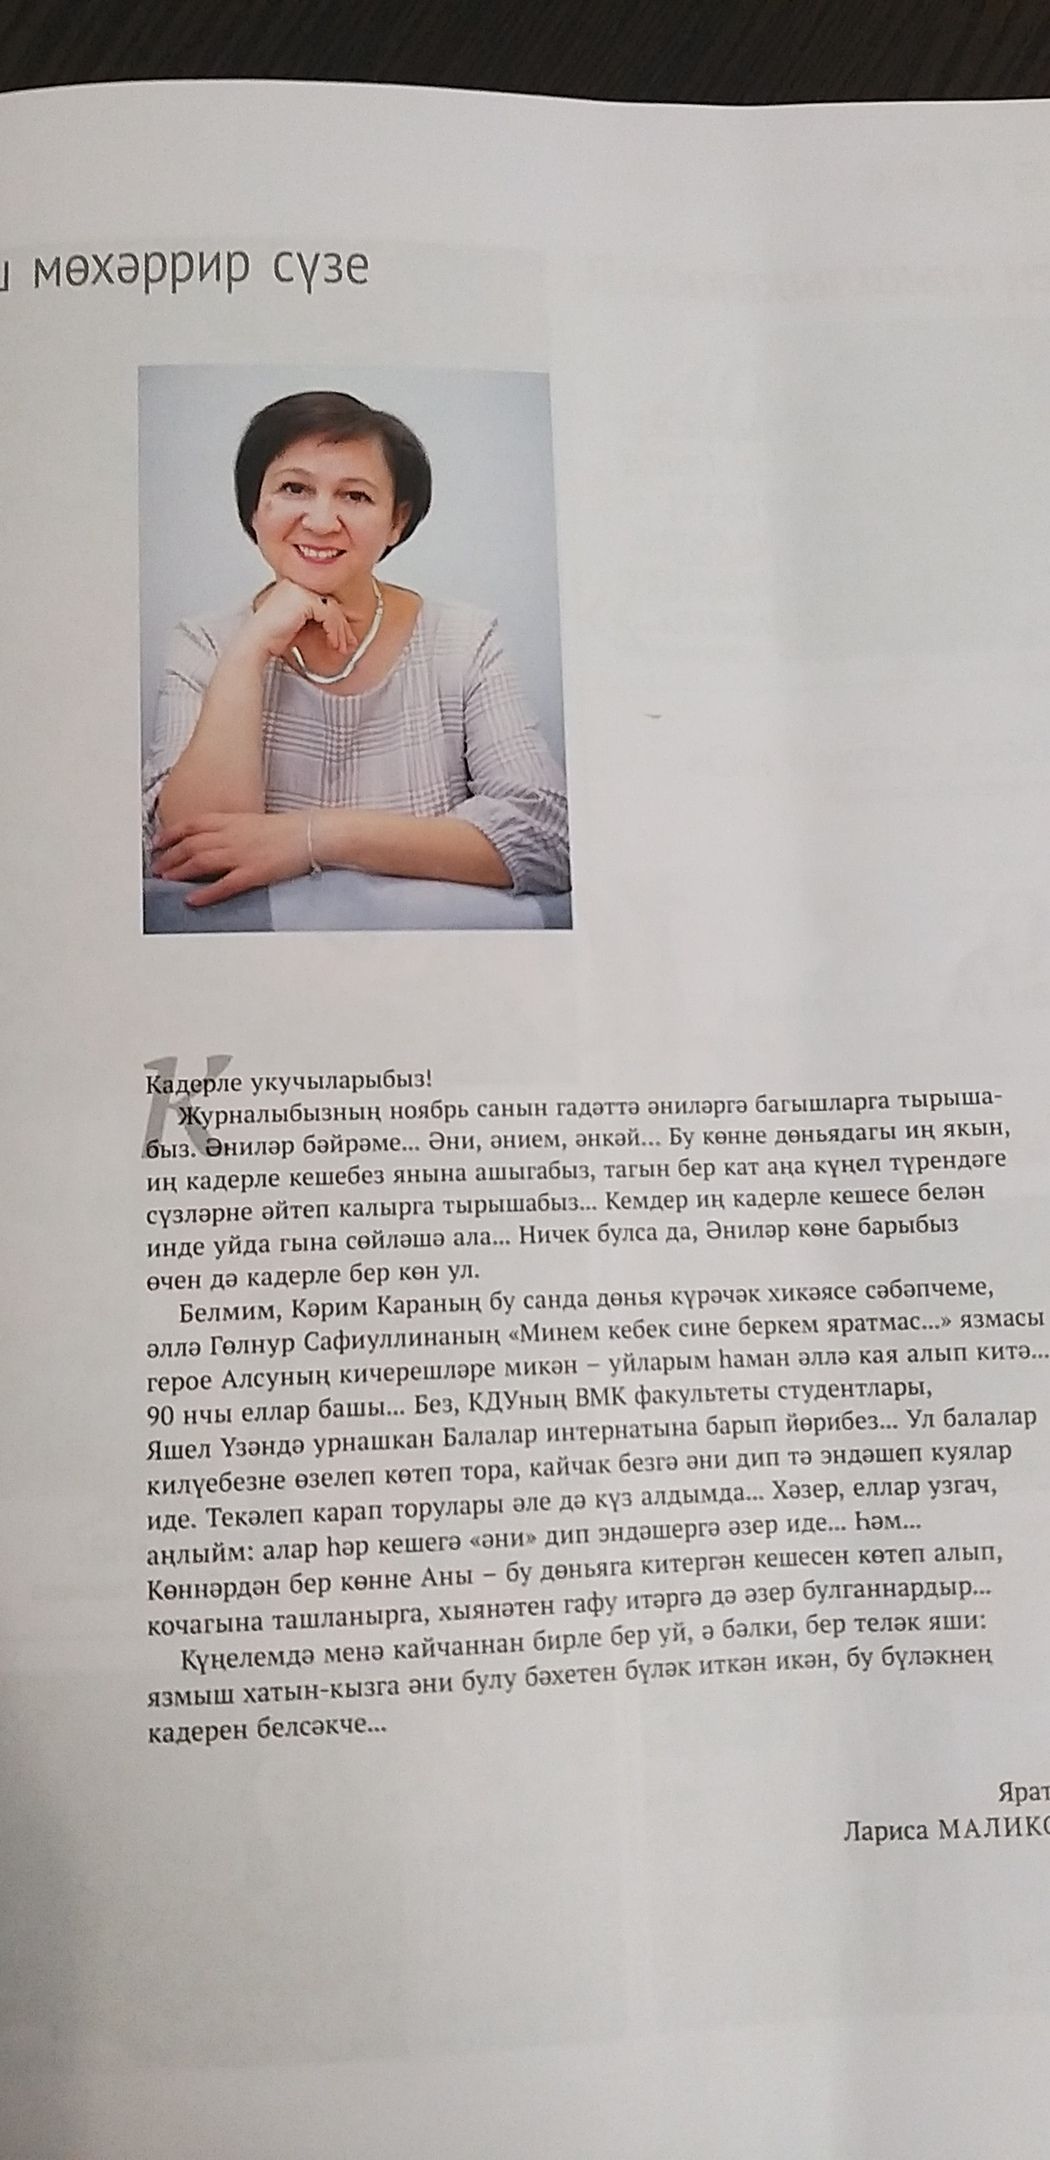 Татарстанские журналы: ноябрьские - в продаже, на декабрьские уже подали заявку!